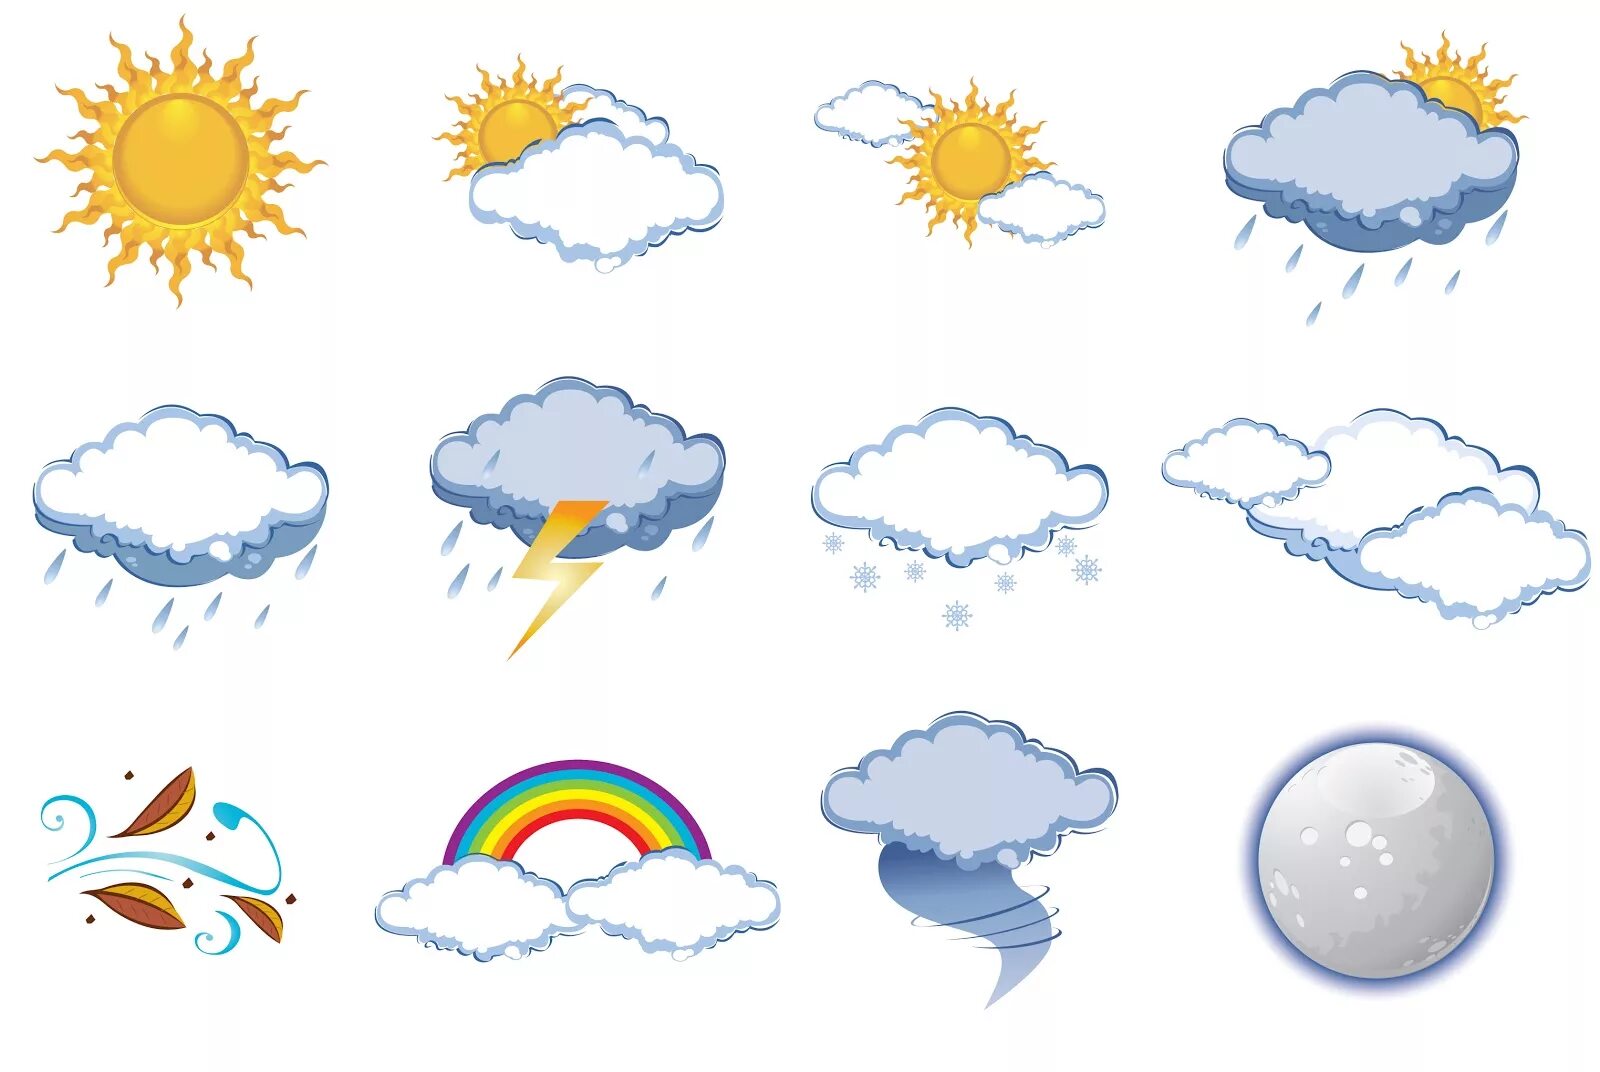 Погодные явления картинки для детей. Погода на английском языке. Gjujlf ZF fzukbqcrjv. Погода картинки на английском для детей. Стабильной погоды